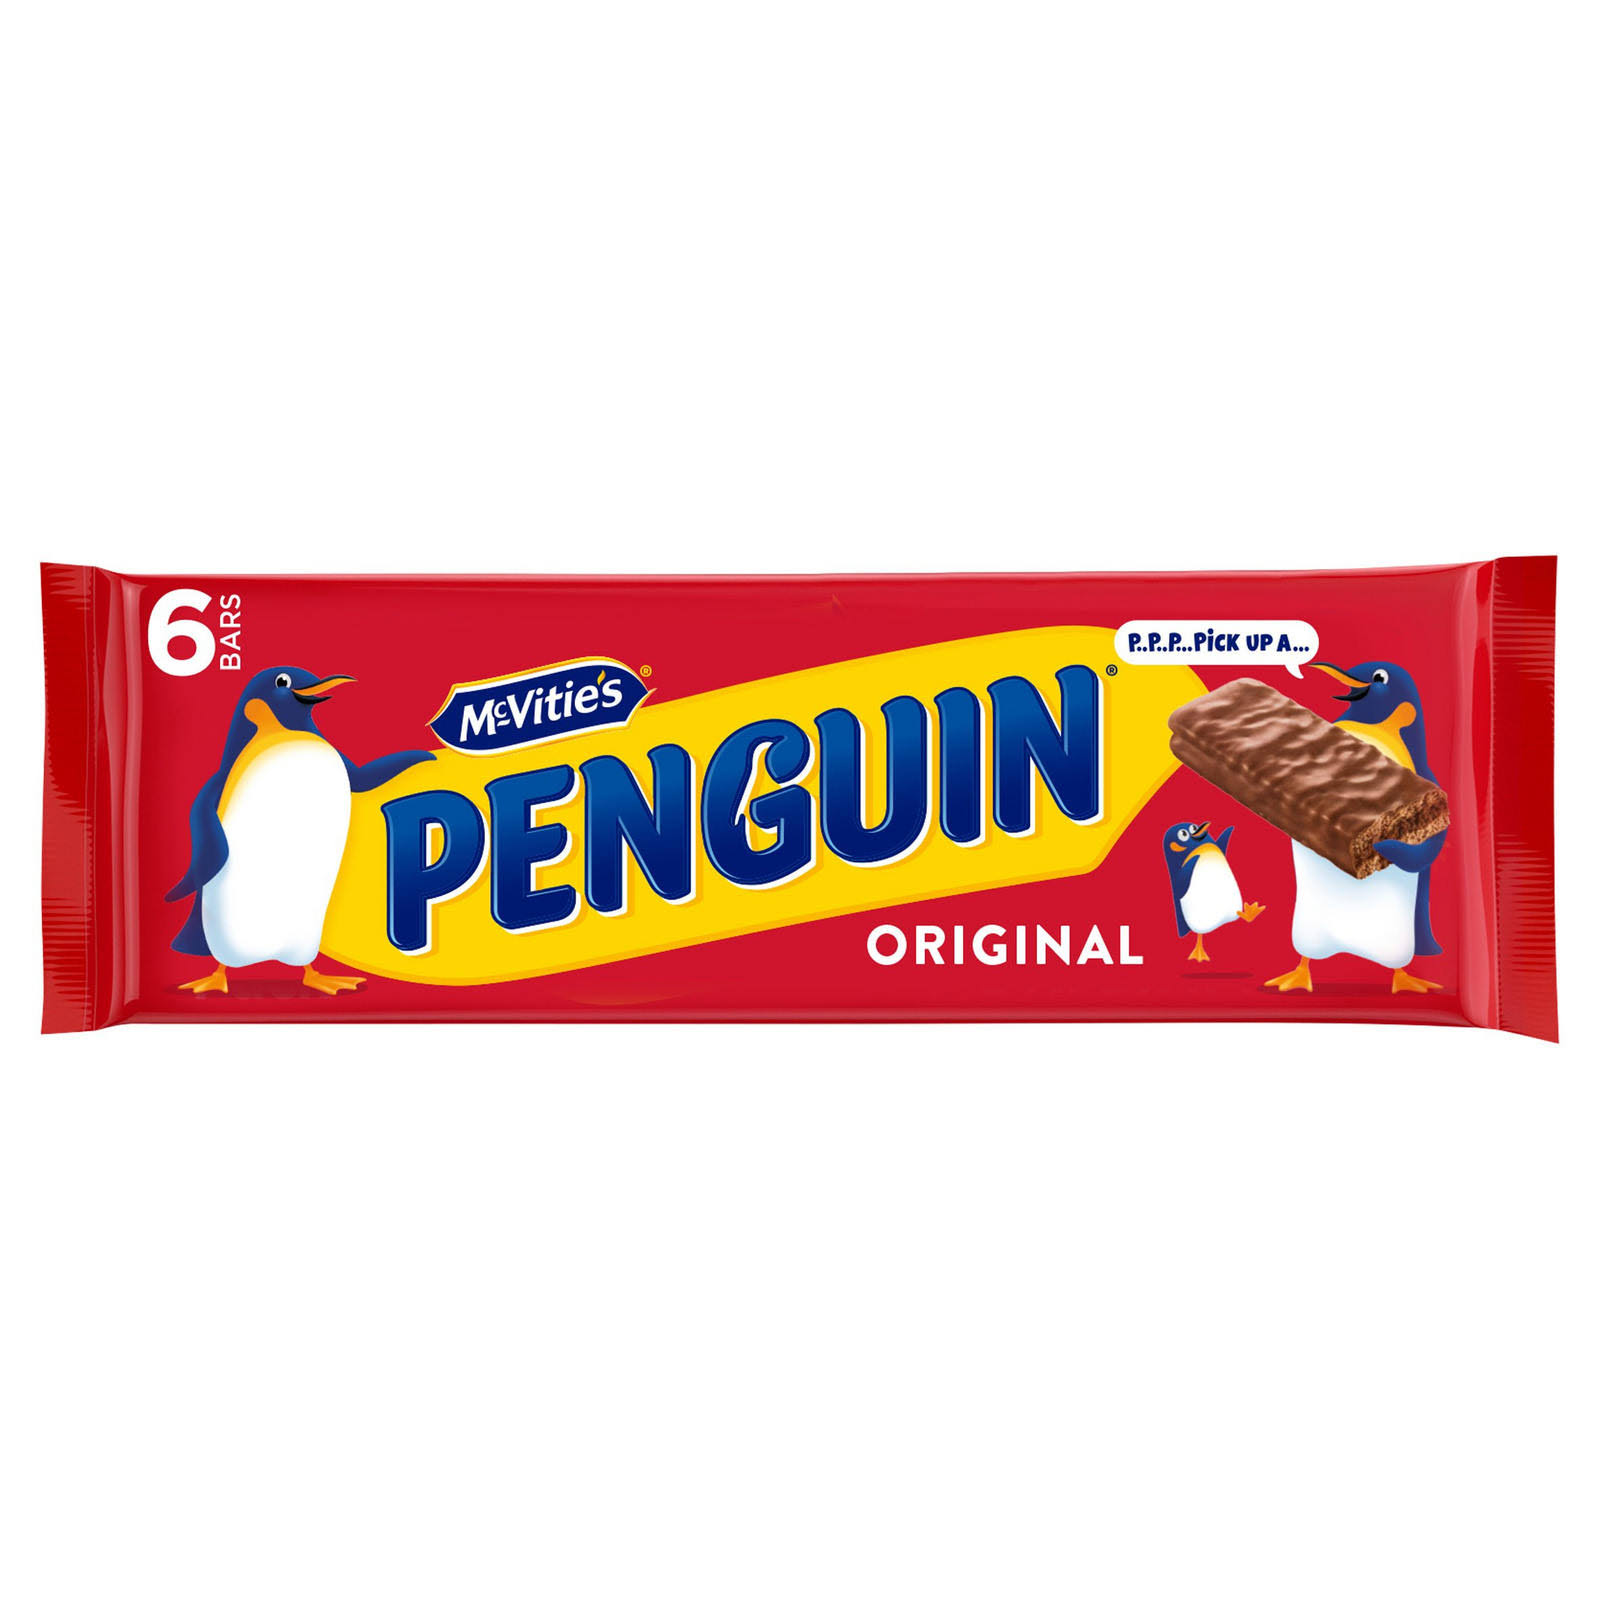 McVitie's Penguin Biscuits - Original, 6 Pack